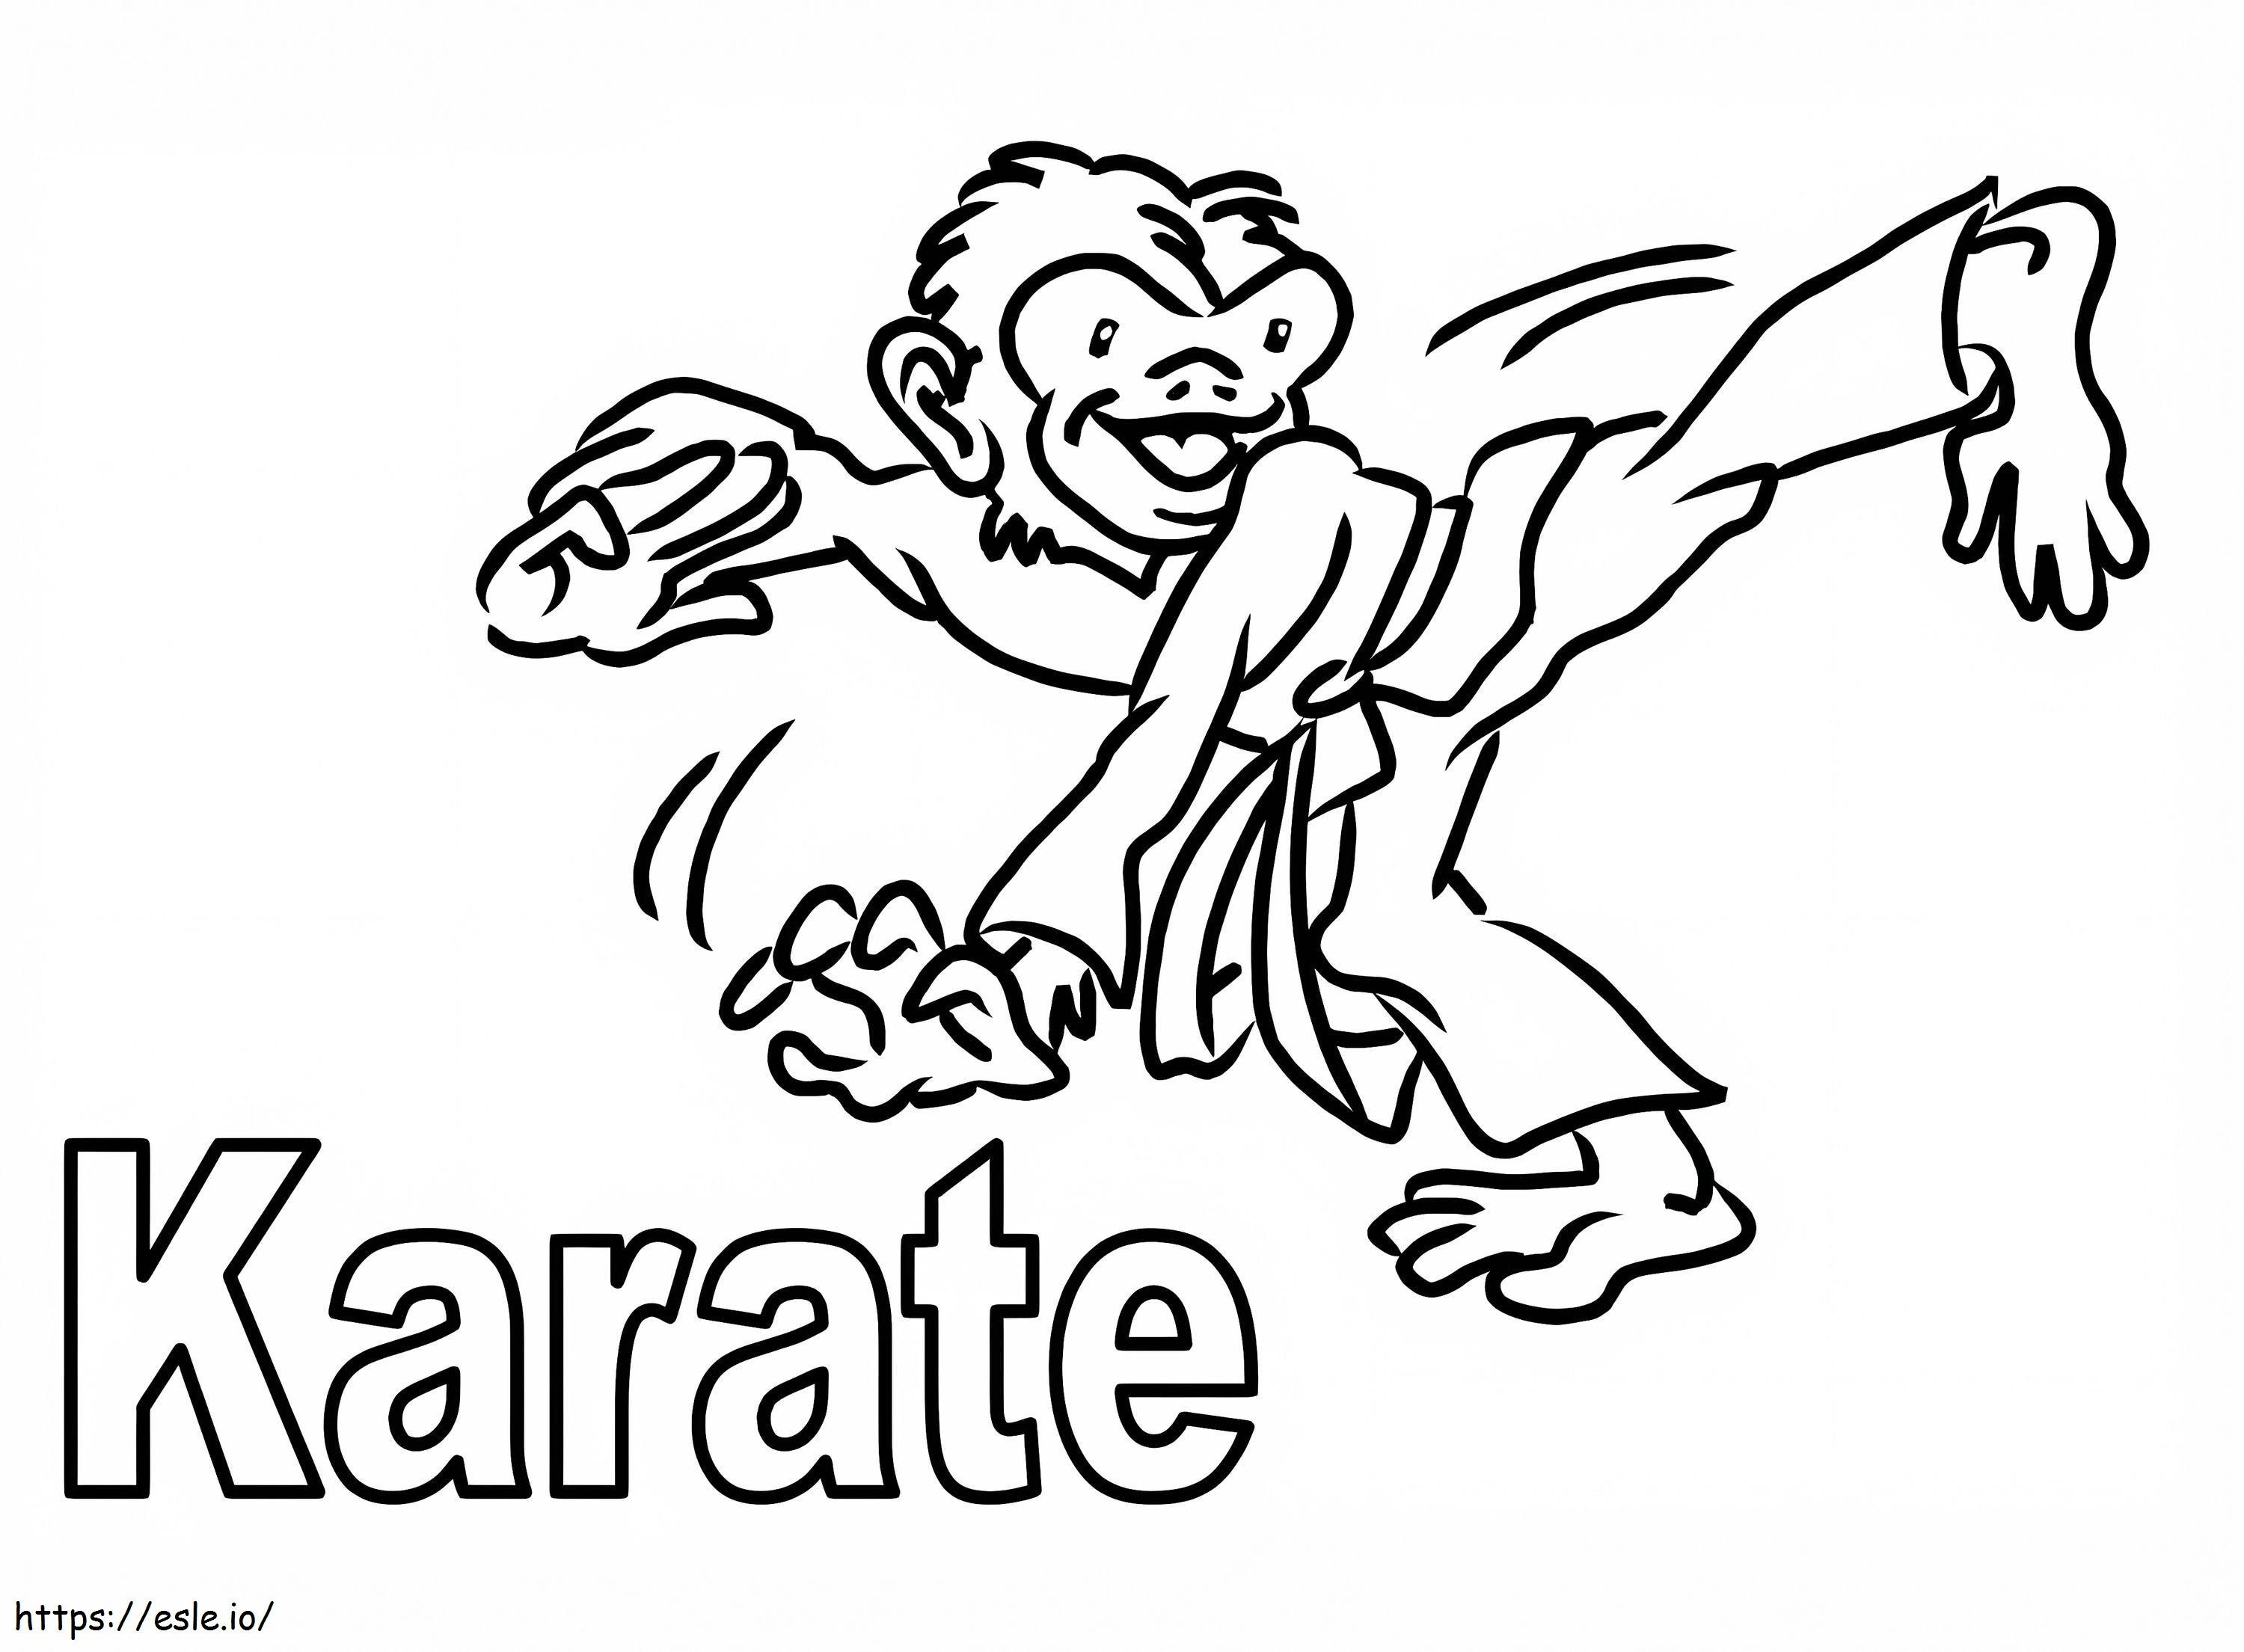 Scimmia Karate da colorare